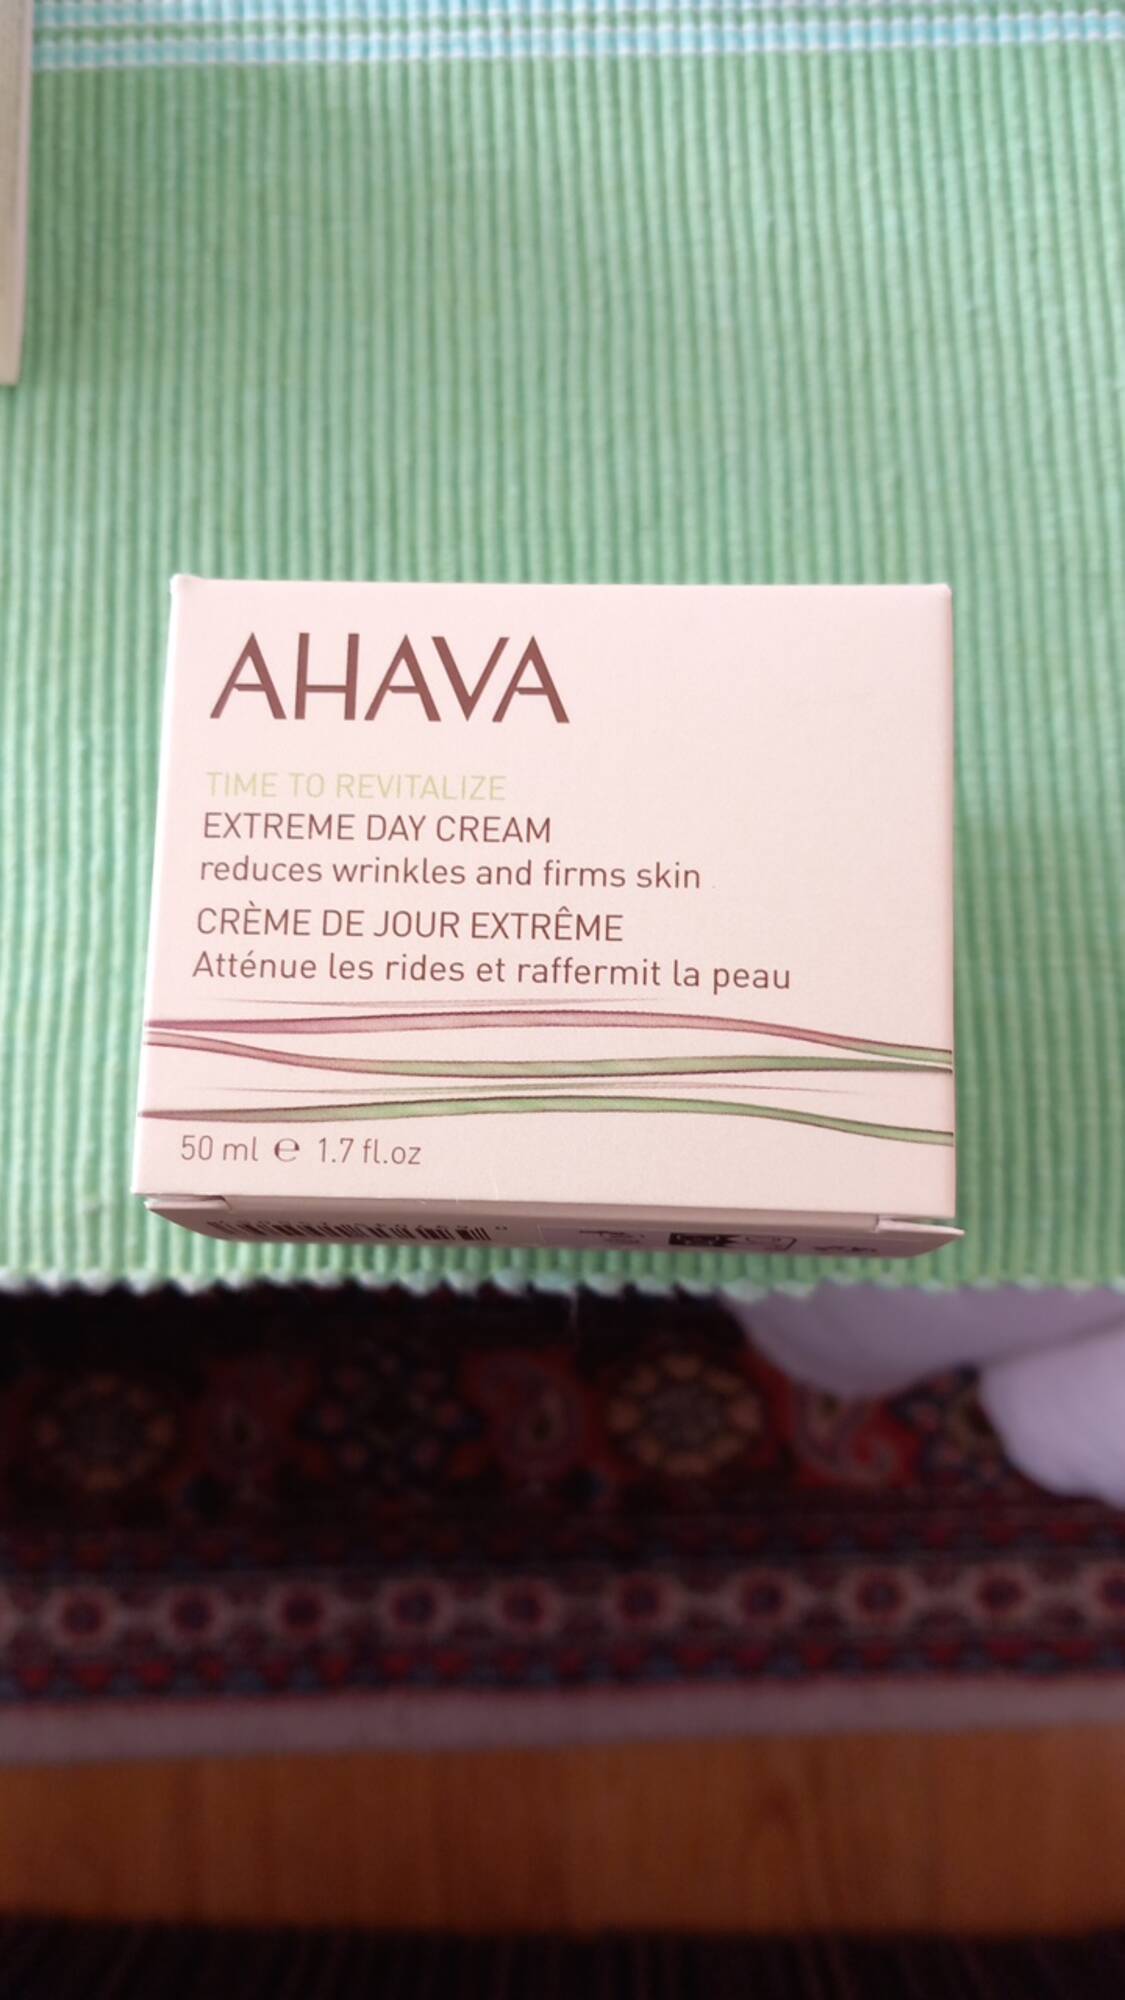 AHAVA - Crème de jour extrême